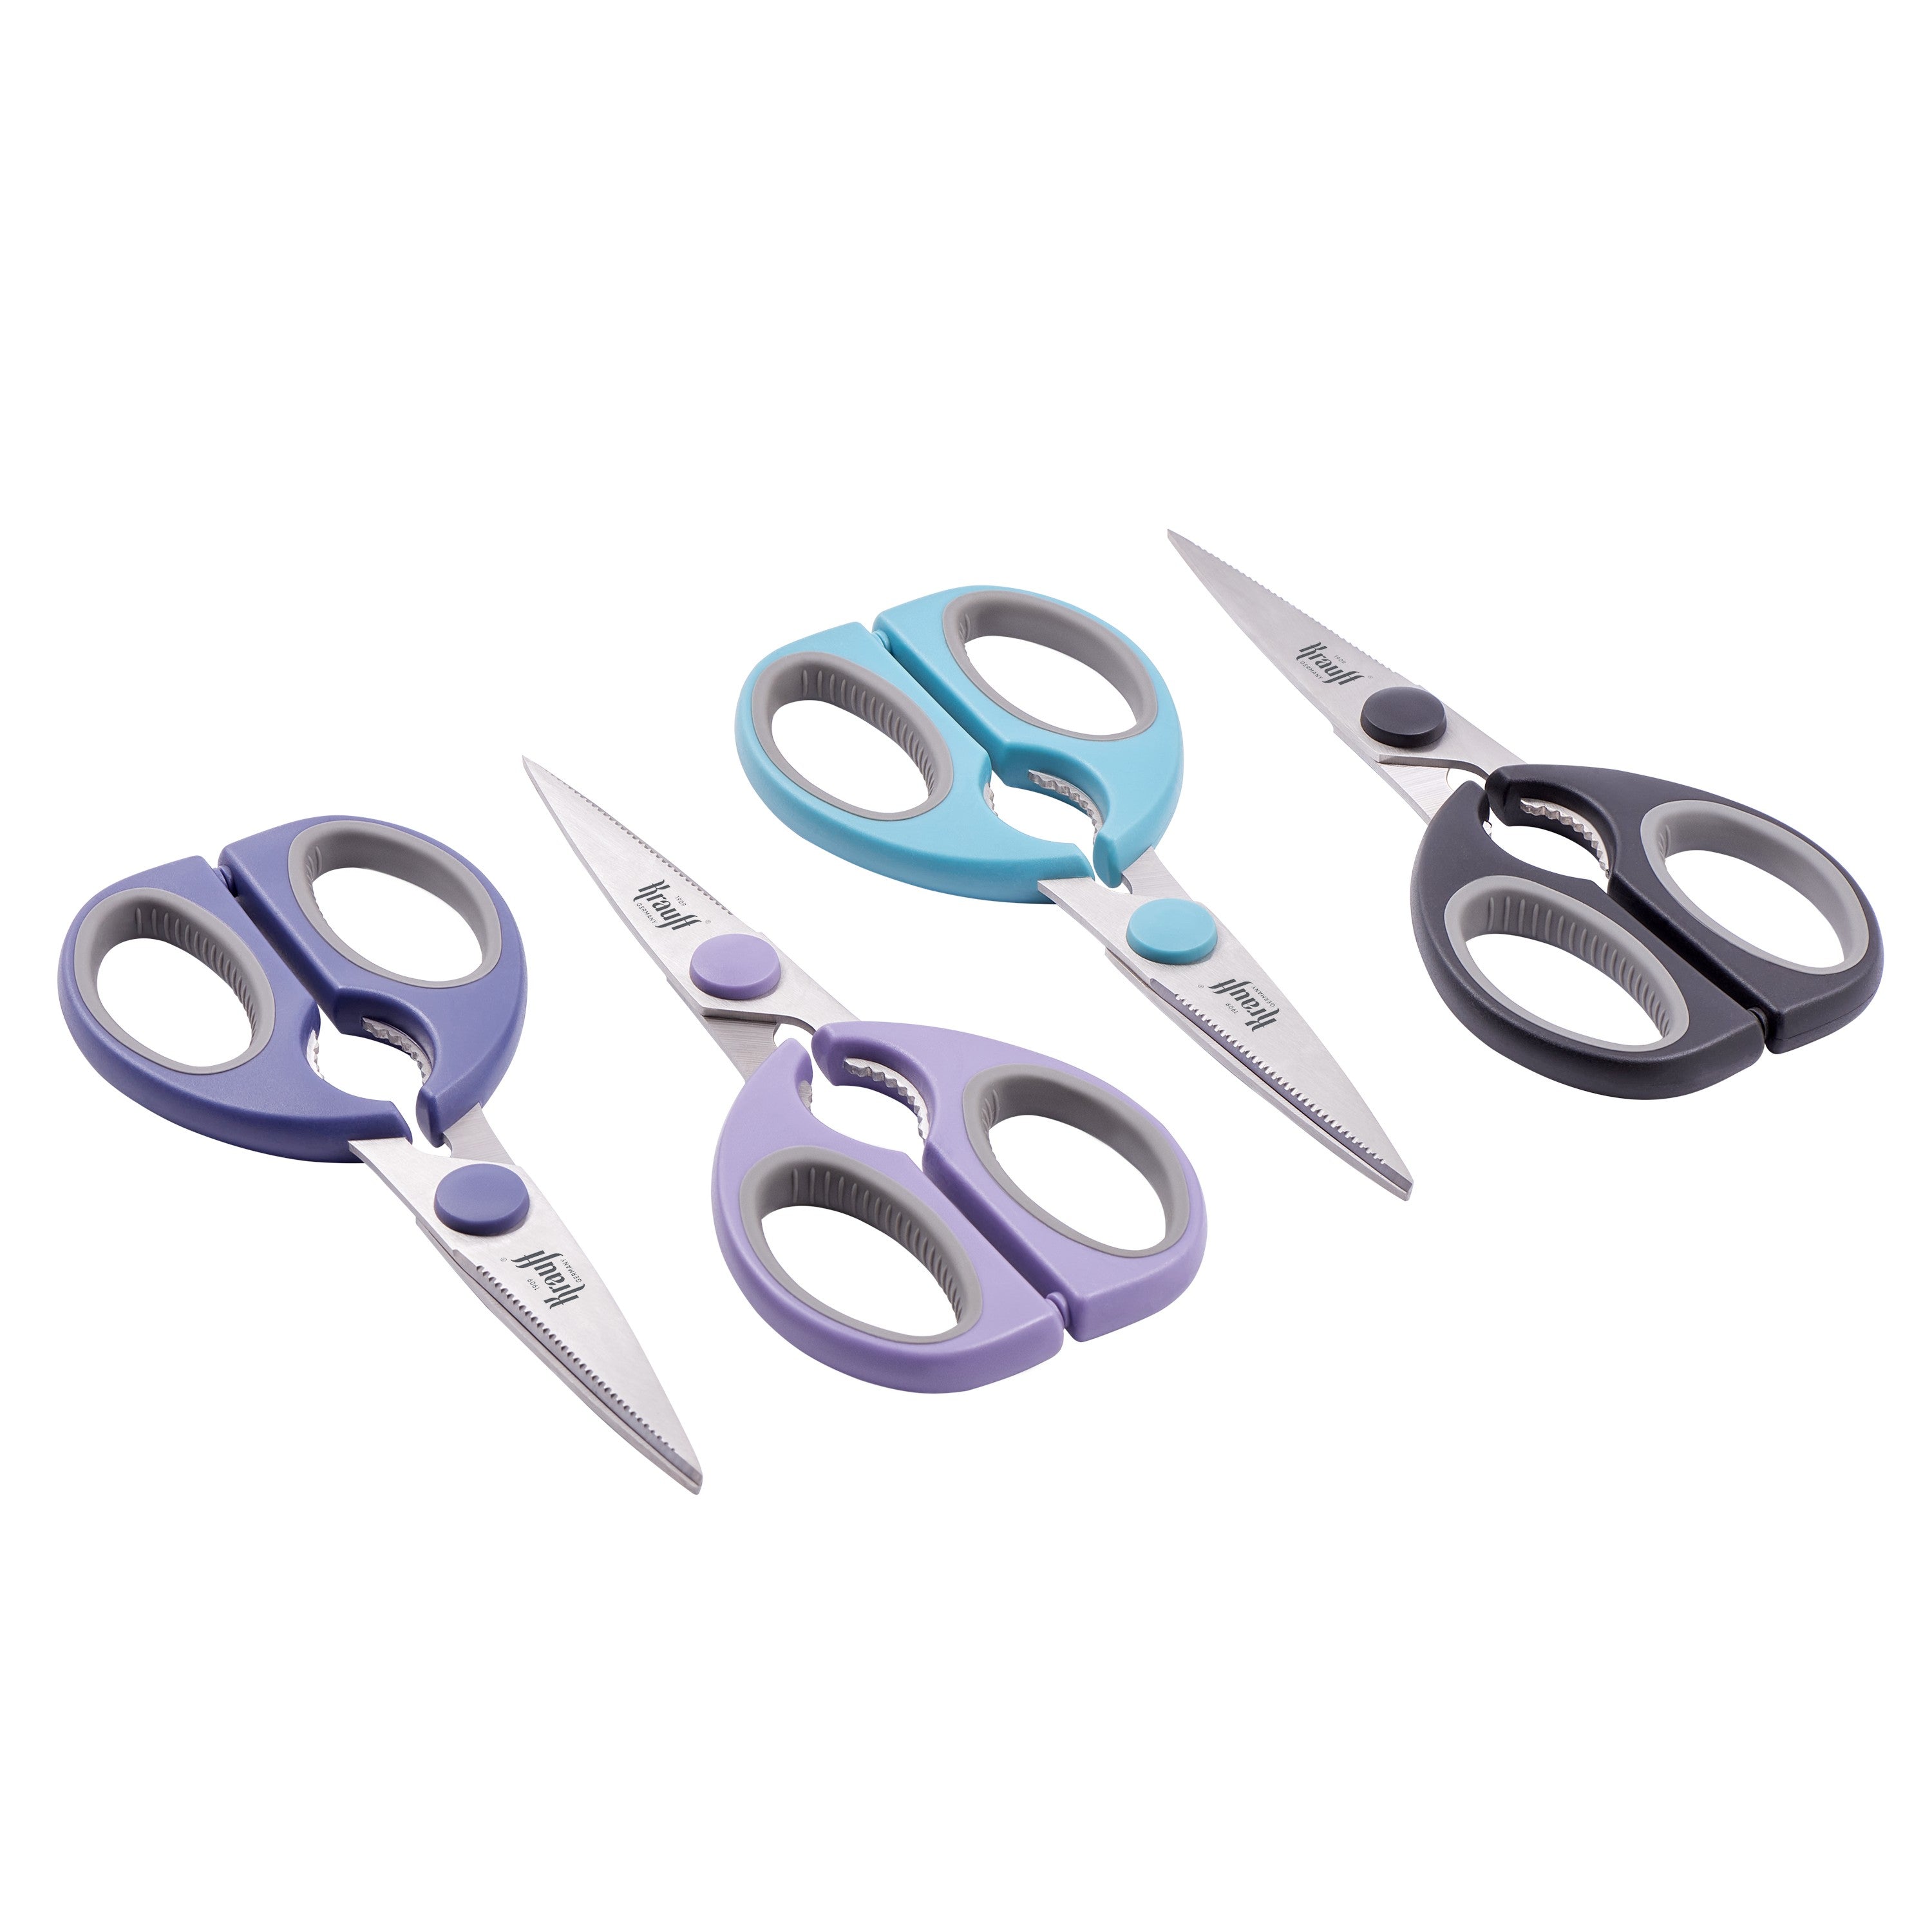 Kitchen scissors Smart Сhef